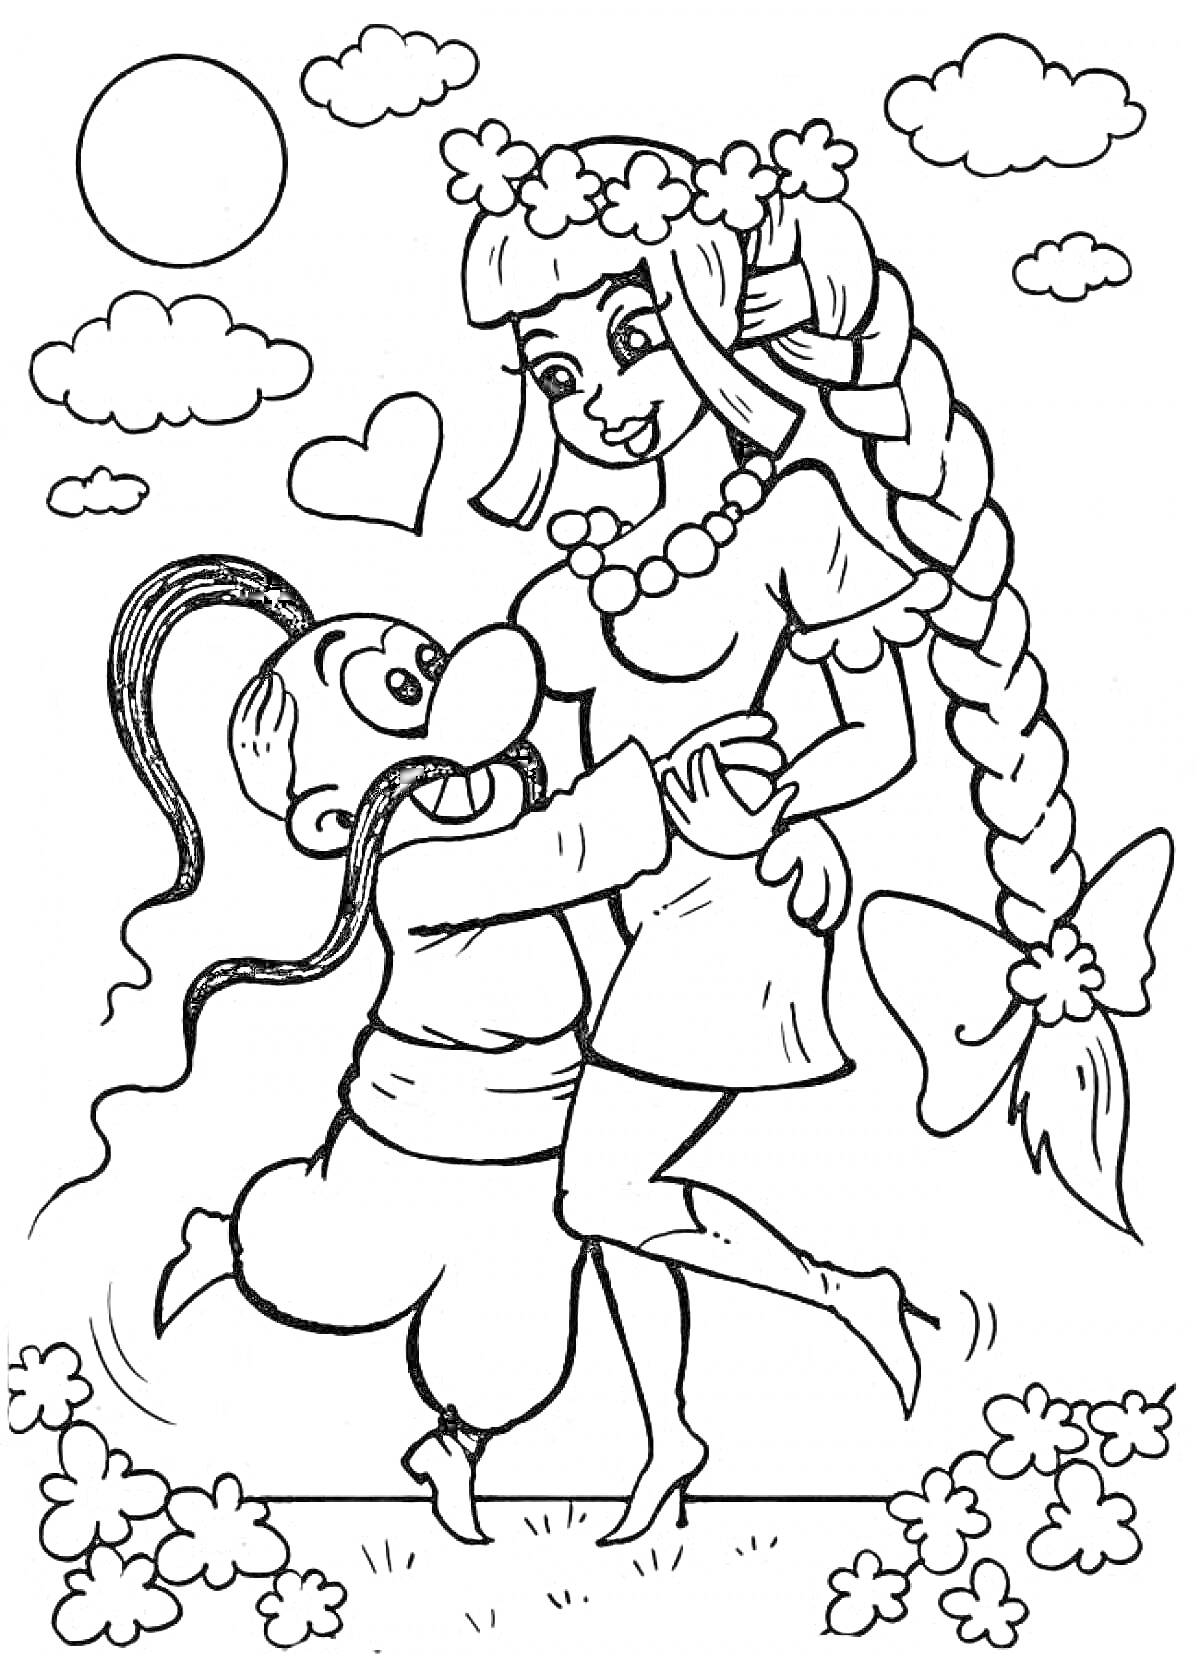 Раскраска Казаки, парень и девушка в традиционной одежде, цветы, солнце и облака